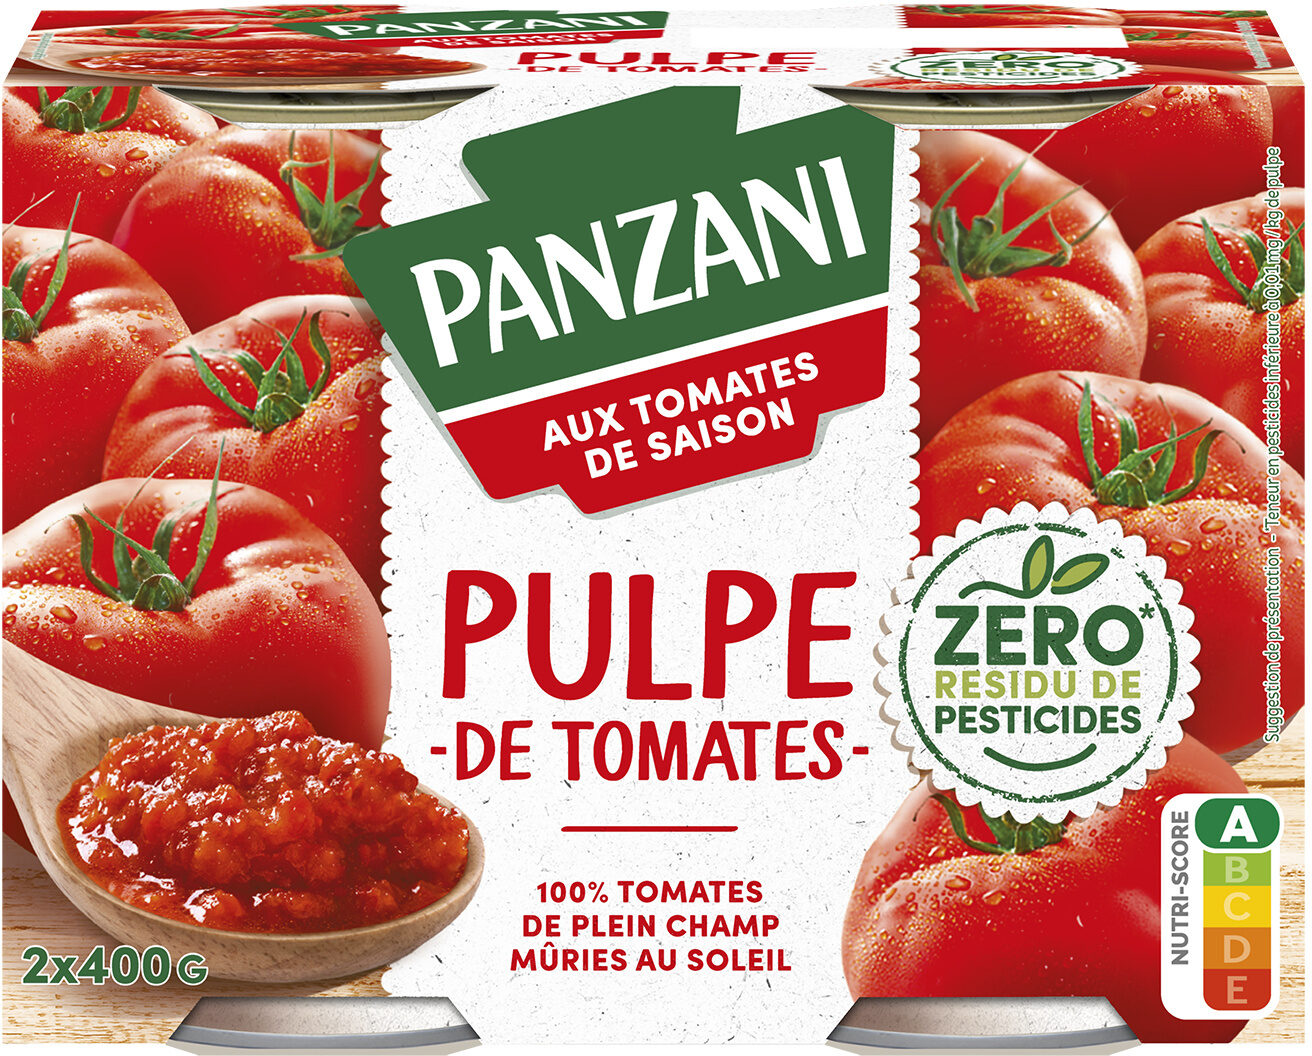 Panzani pulpe fine zero residu de pesticide 2x400g - Produit